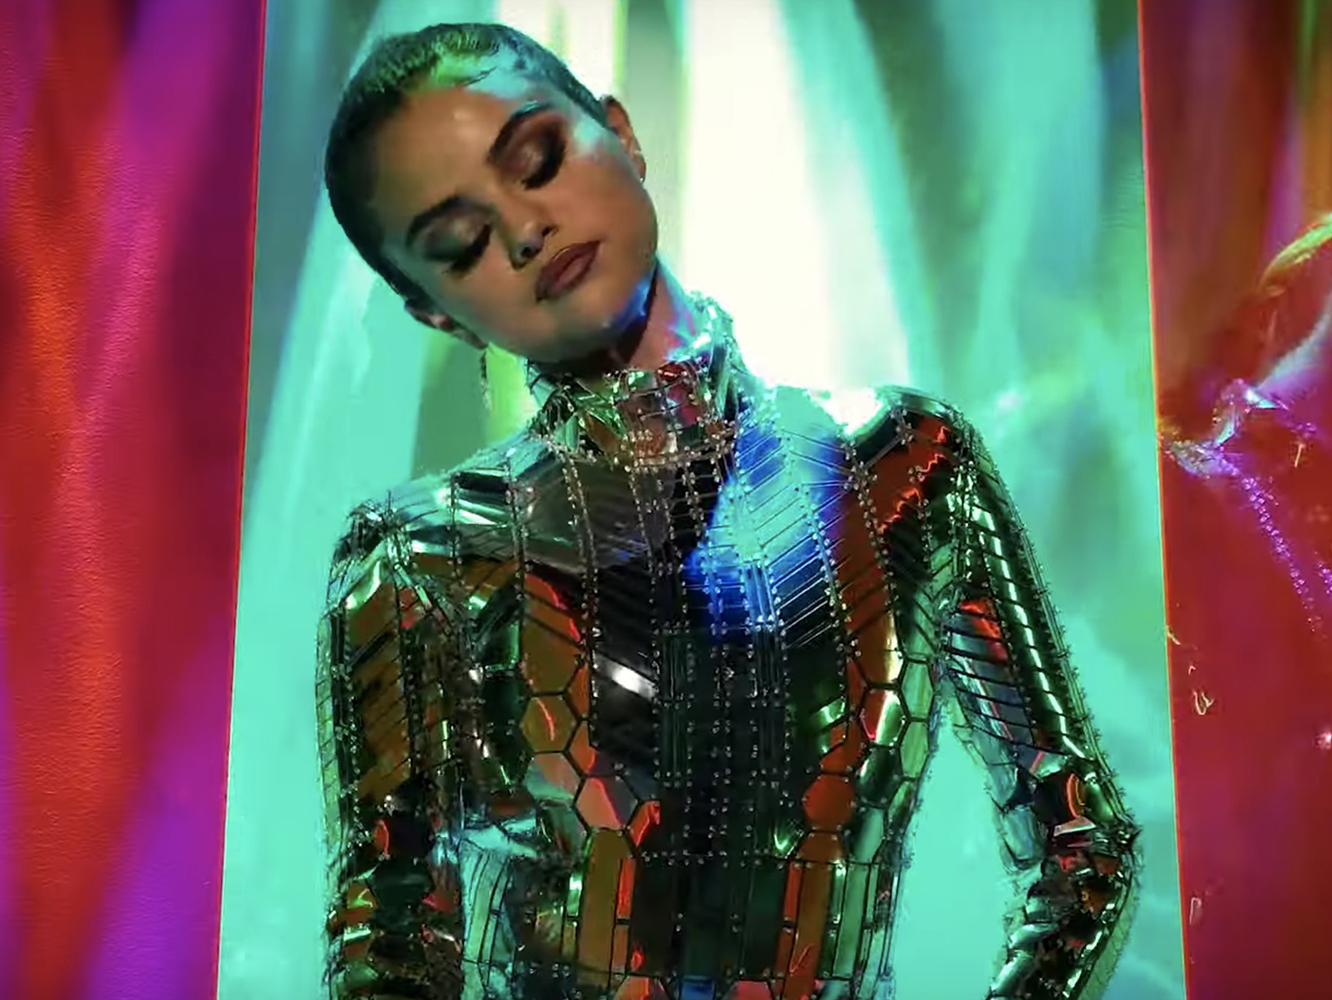  Selena Gomez lanza su as bajo la manga: el bop chic ‘Look At Her Now’, cargado de coreografía